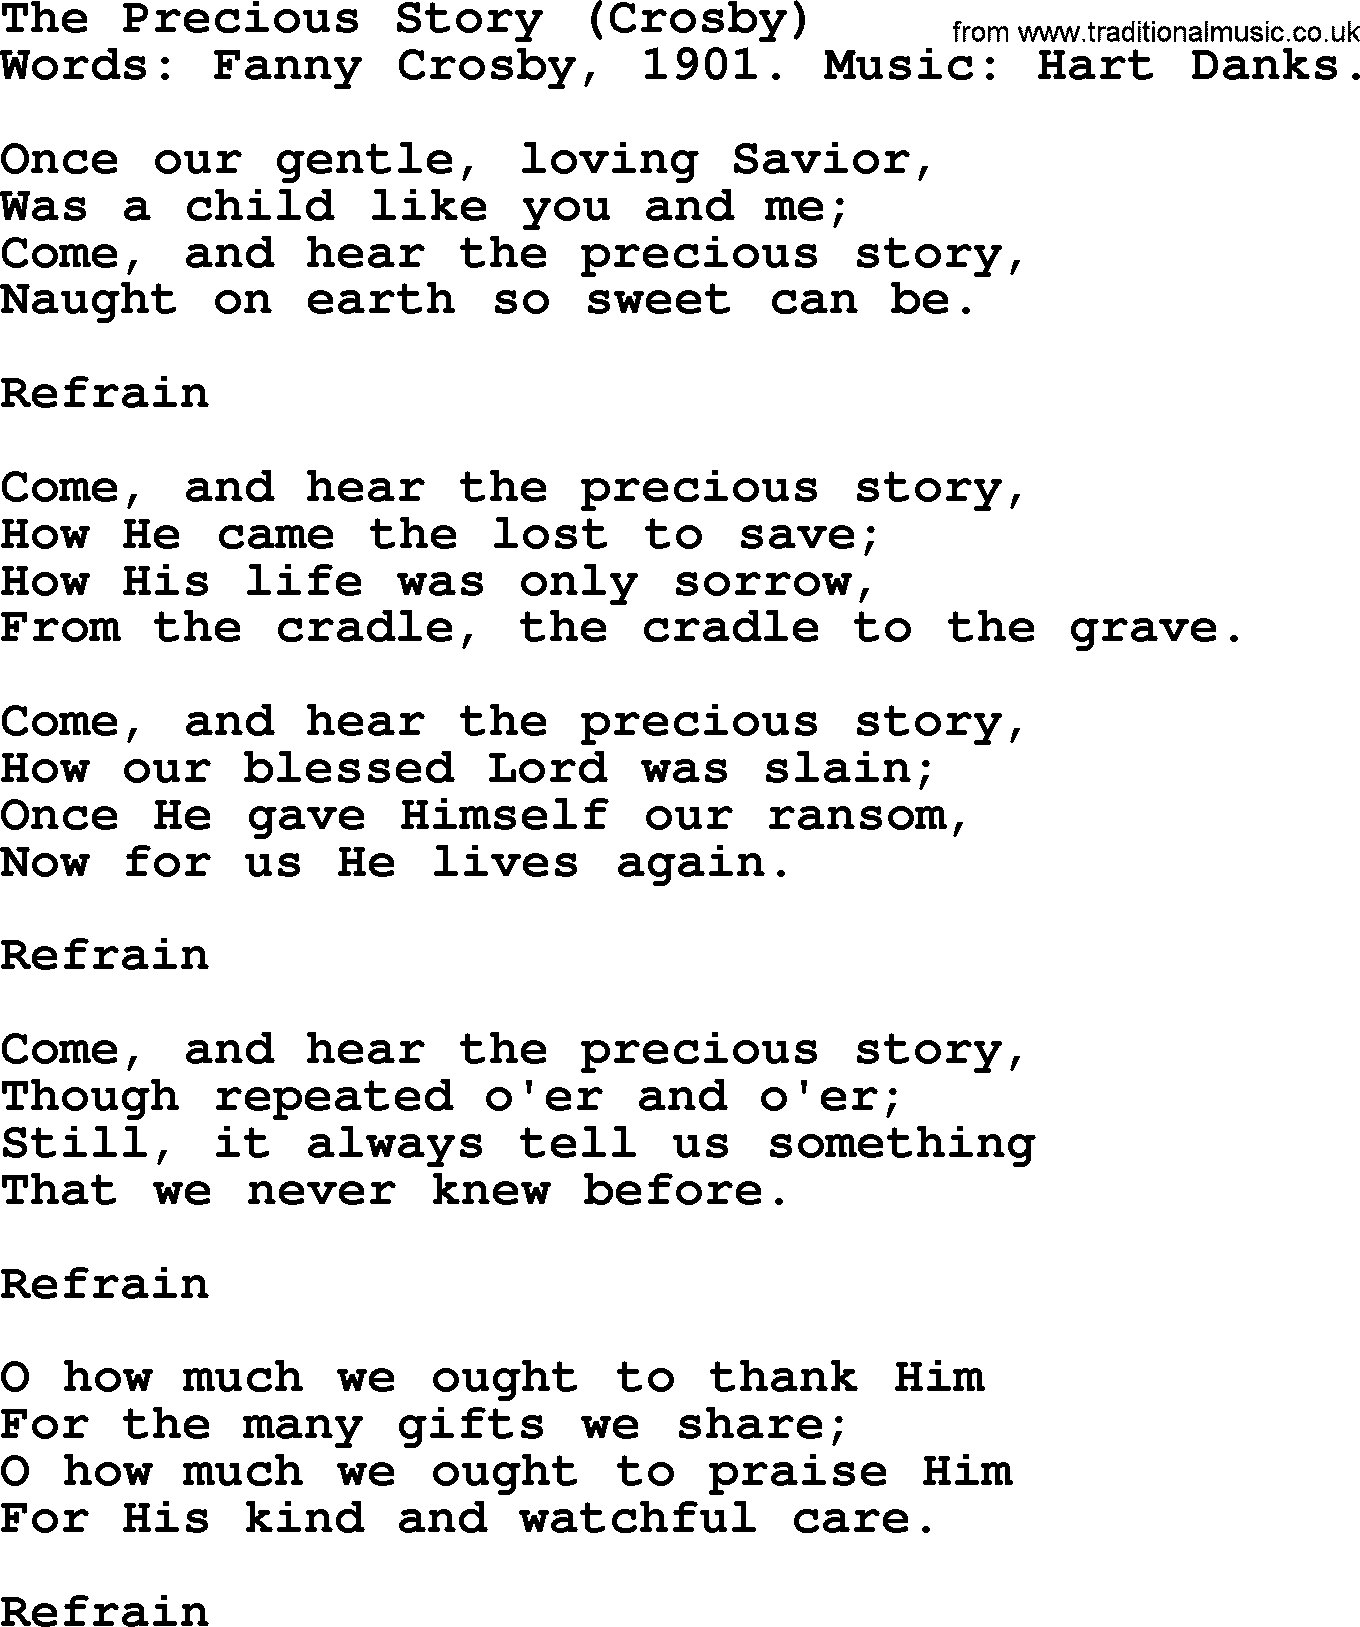 Fanny Crosby song: The Precious Story, lyrics